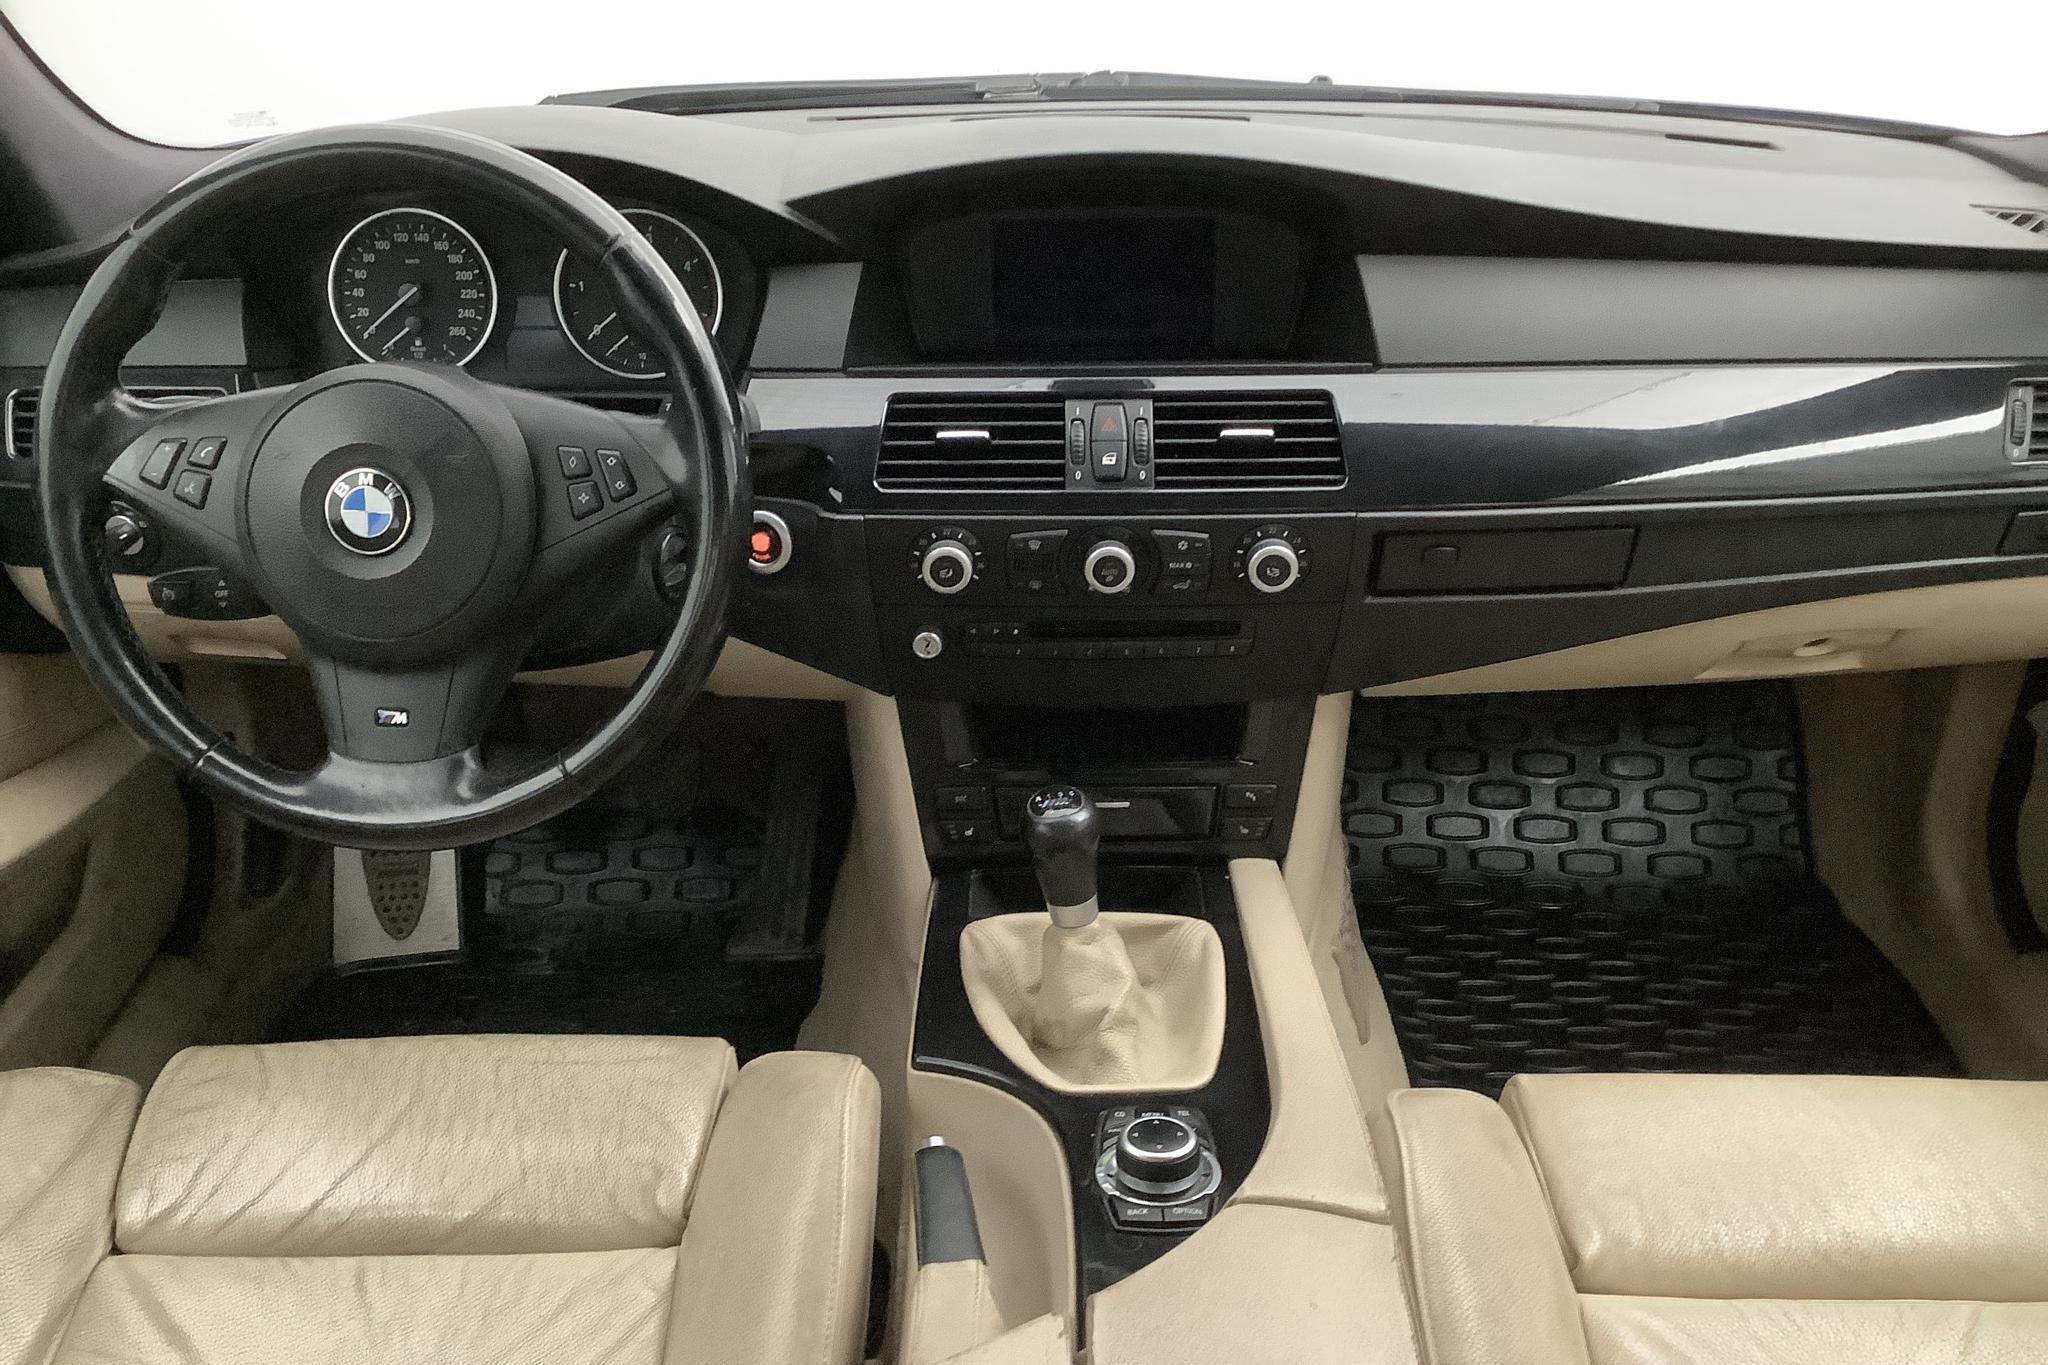 BMW 520d Sedan, E60 (177hk) - 251 320 km - Manual - blue - 2010